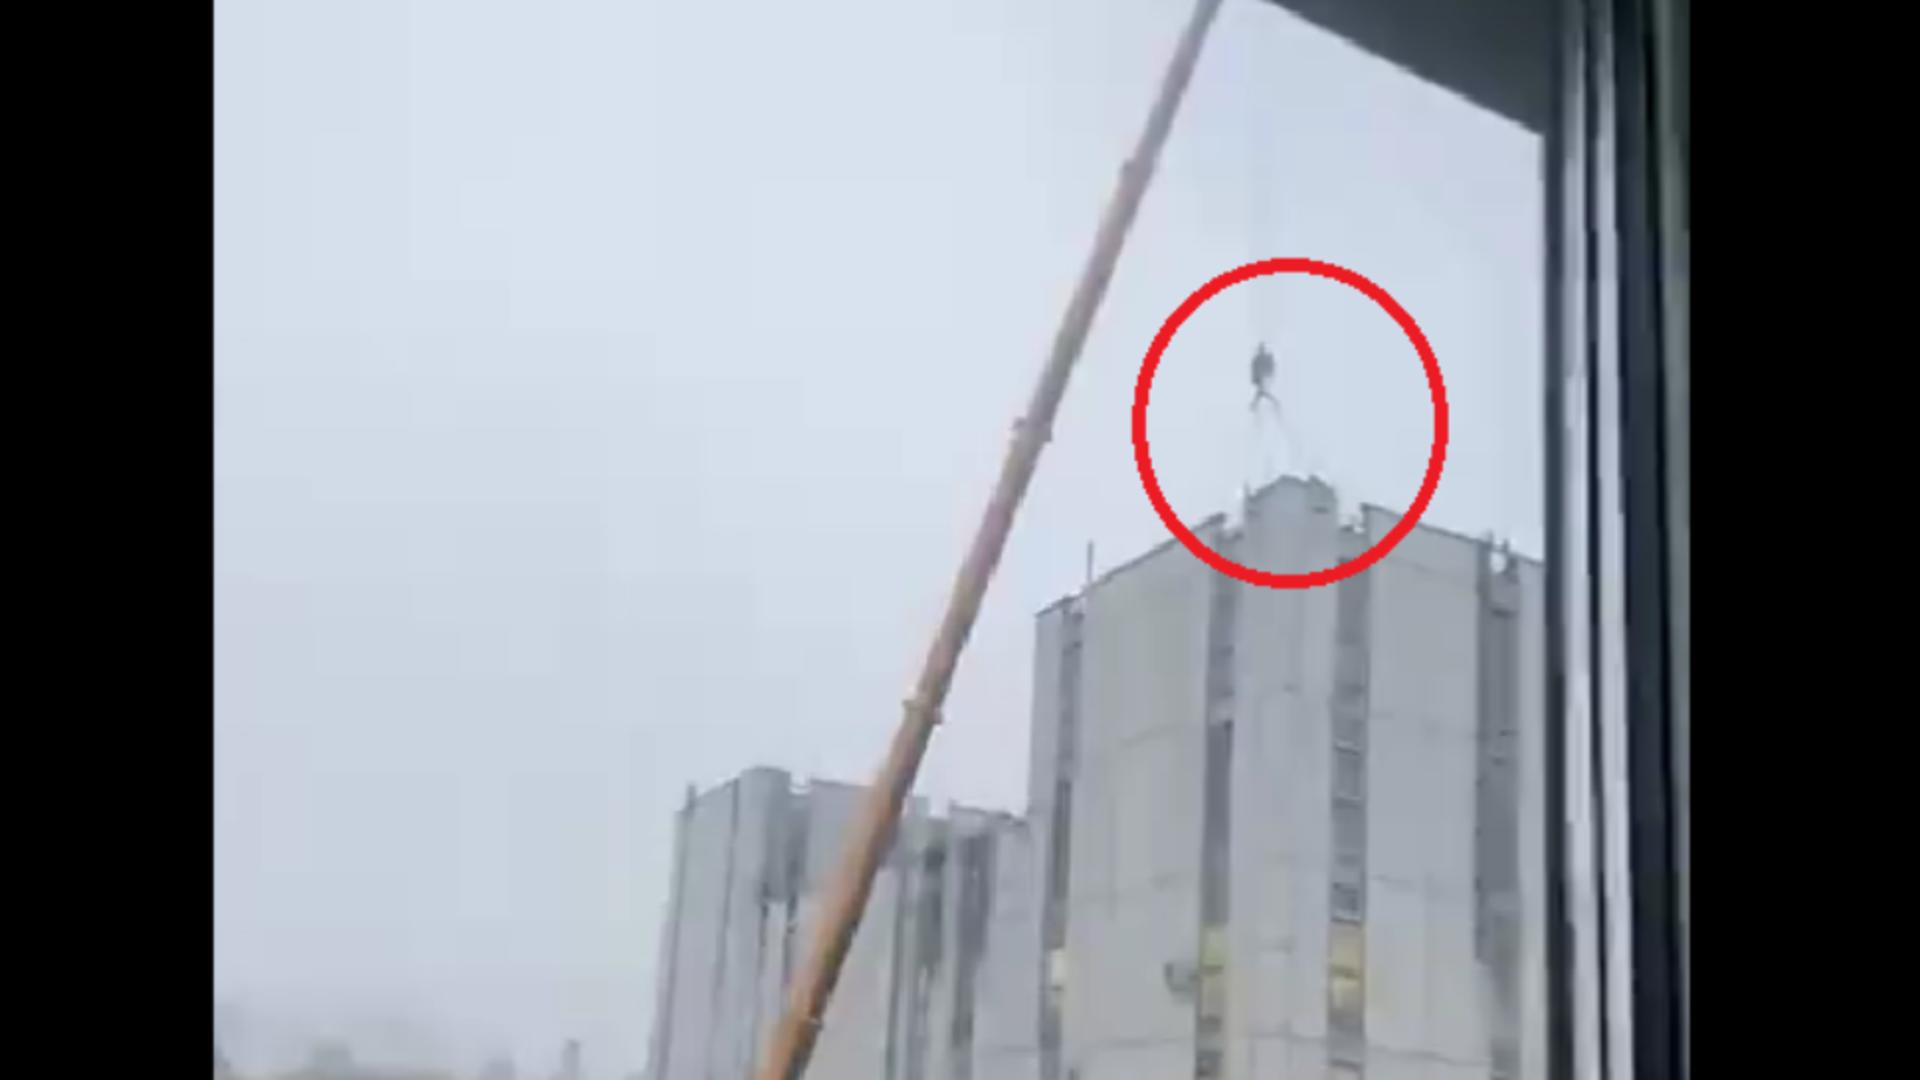 Sisteme de apărare antiaeriene, instalate pe clădirile administrative din Moscova - VIDEO